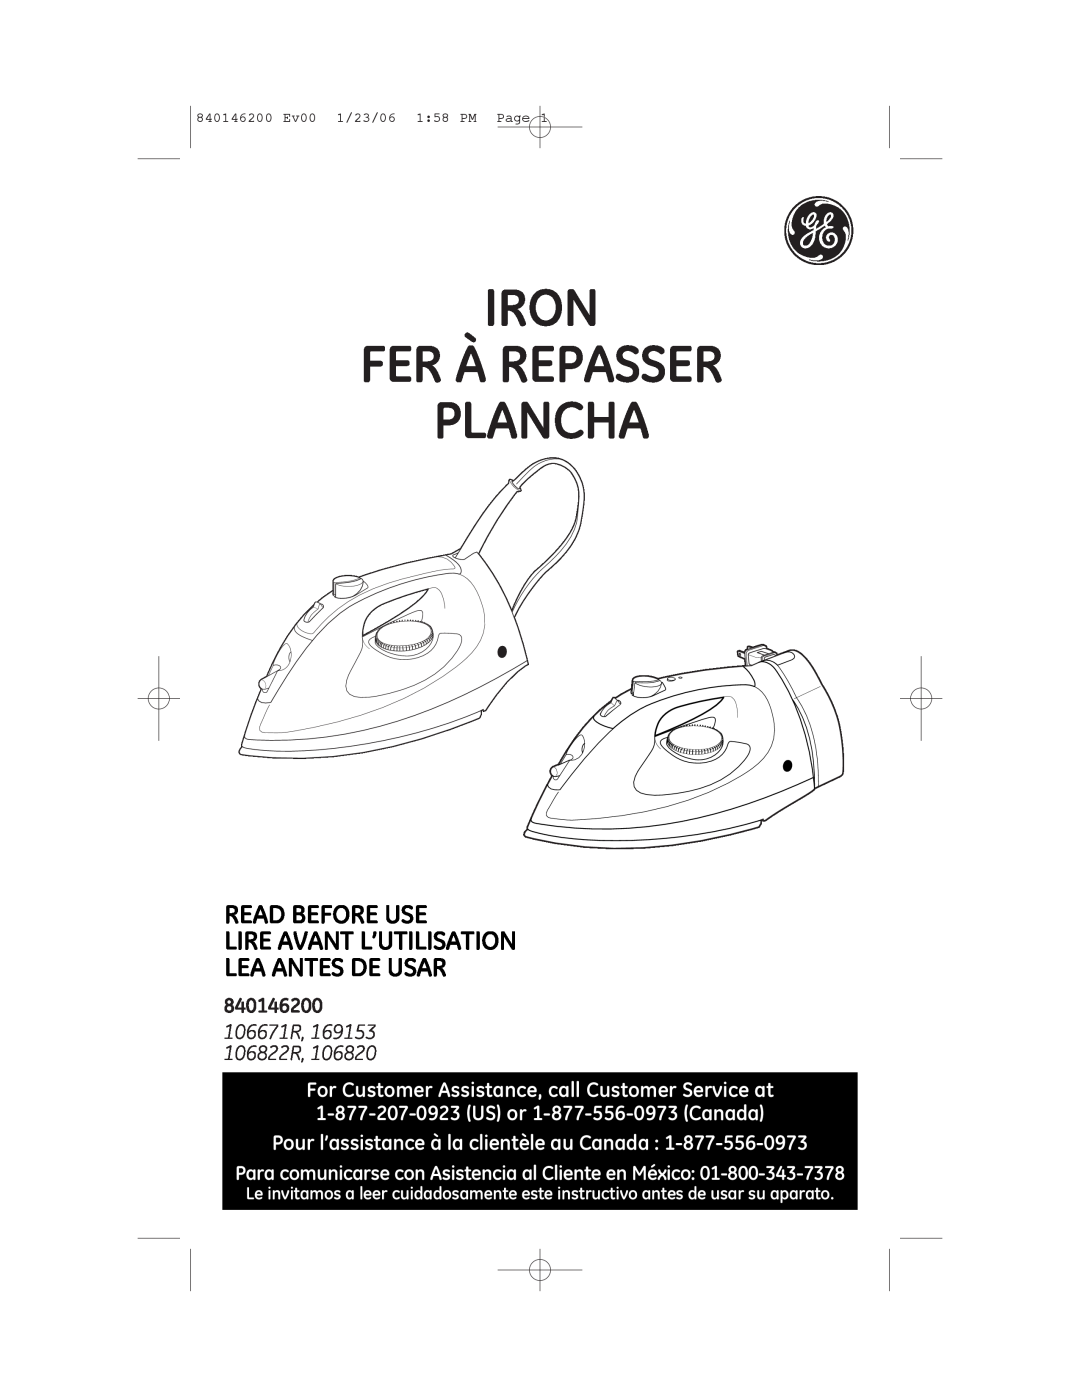 GE 106820, 106822R manual Pour l’assistance à la clientèle au Canada, Iron Fer À Repasser Plancha, 840146200 